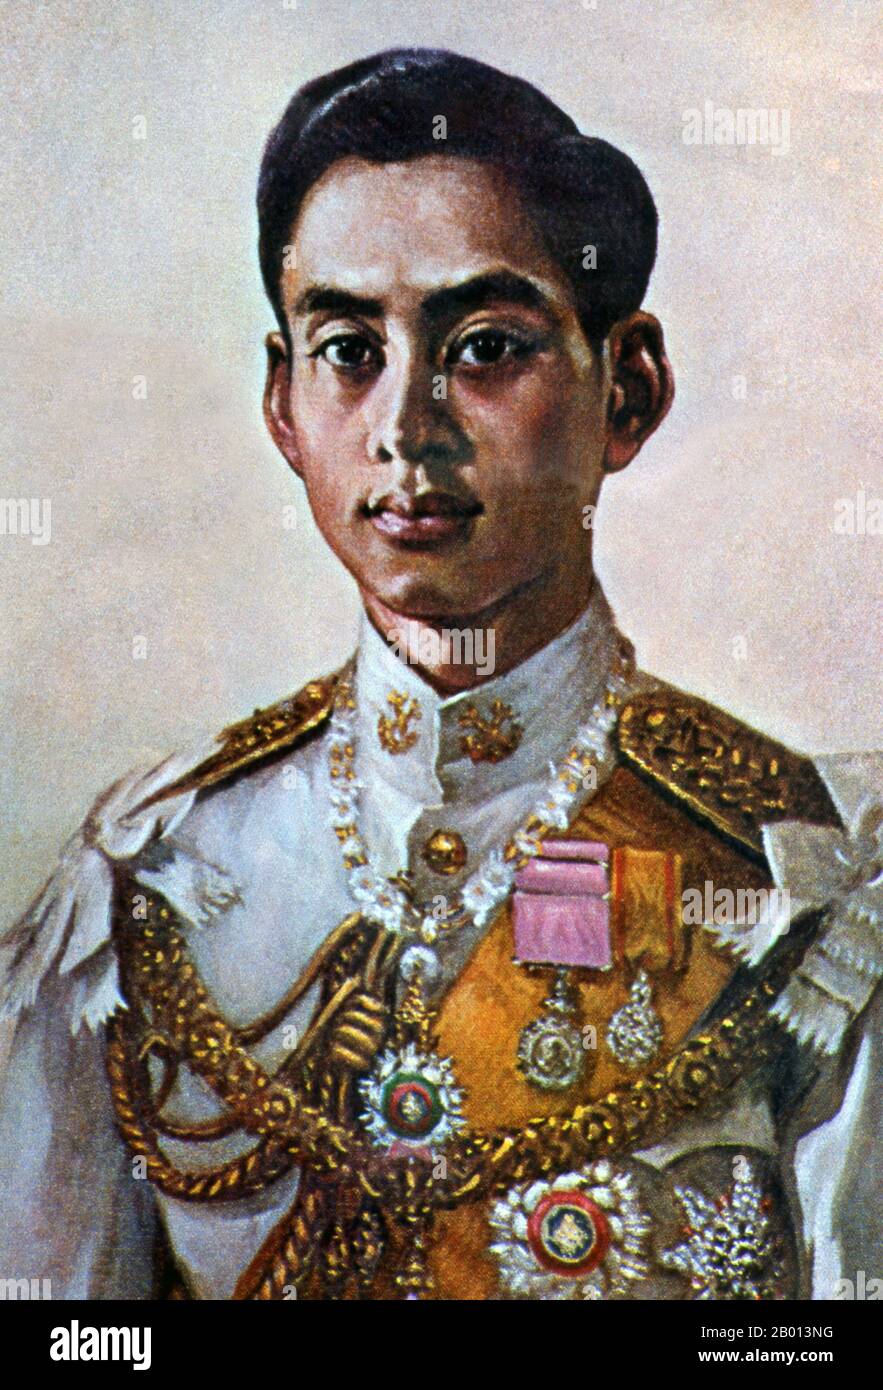 Thailand: König Rama VIII., Ananda Mahidol (20. September 1925 – 9. Juni 1946), 8. Monarch der Chakri-Dynastie. Öl auf Leinwand, 20. Jahrhundert. Ananda Mahidol, auch bekannt als Rama VIII., war der achte Monarch Thailands unter dem Haus Chakri. Im März 1935 wurde er von der Nationalversammlung als König anerkannt; er war ein neunjähriger Junge, der zu dieser Zeit in der Schweiz lebte. Im Dezember 1945 kehrte er nach Thailand zurück. Im Juni 1946 wurde er in seinem Bett erschoss gefunden. Medizinische Prüfer urteilten, dass es ein Mord war und drei Bedienstete hingerichtet wurden. Seine Tötung war Gegenstand vieler Kontroversen. Stockfoto